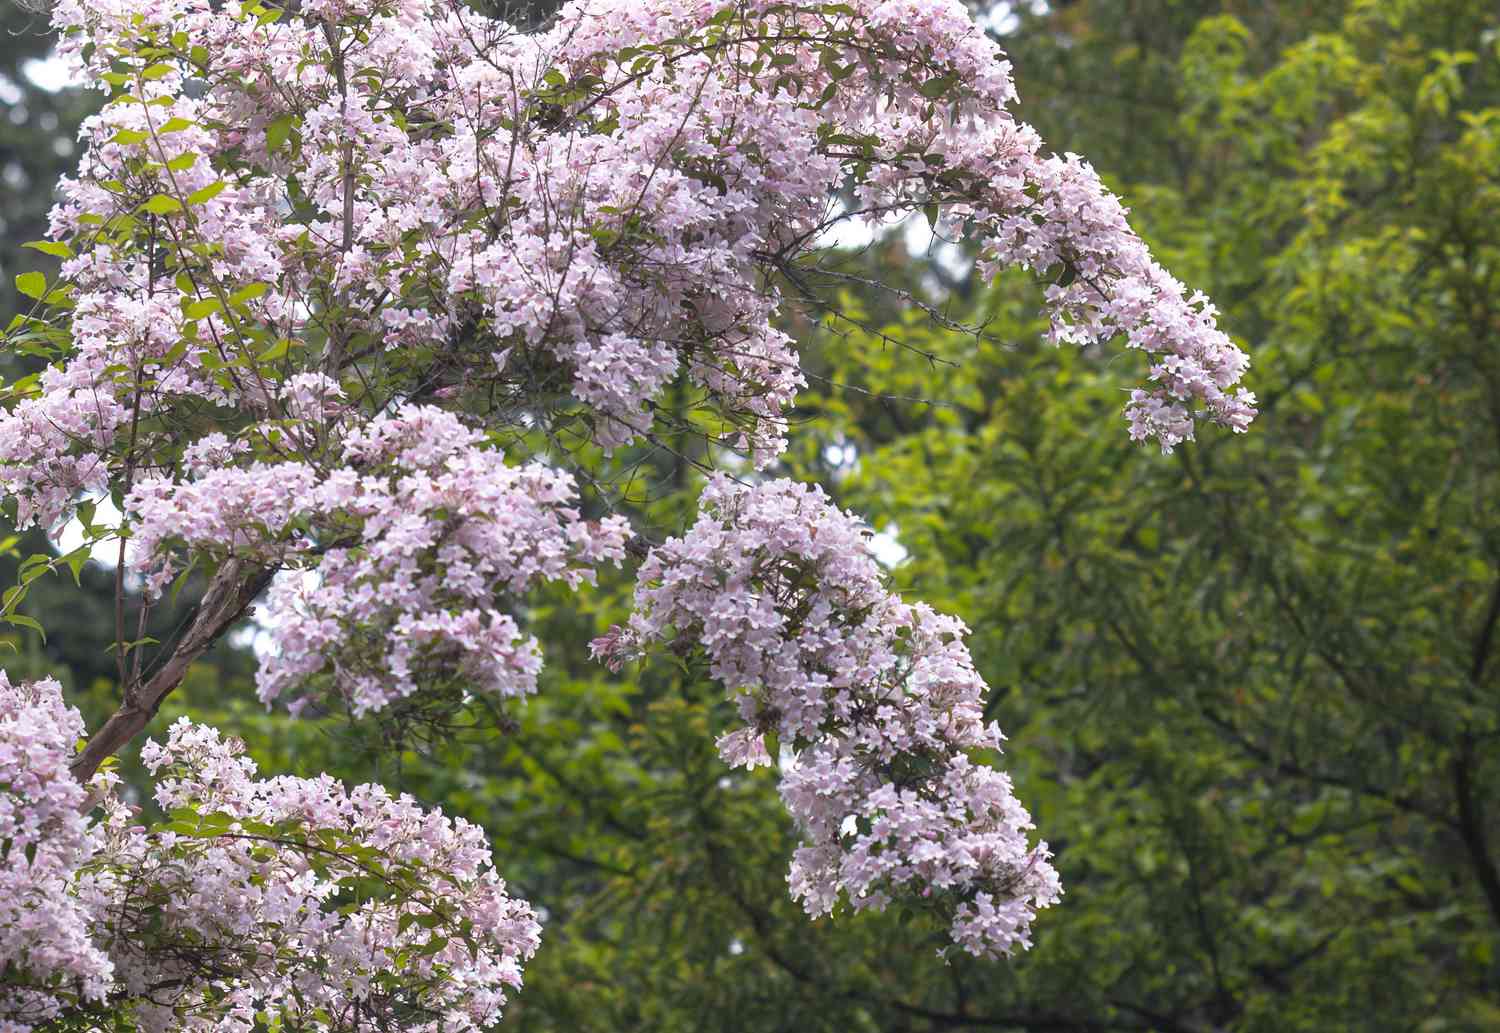 Schönheitsstrauch mit kleinen rosa Blüten an bogenförmigen Zweigen